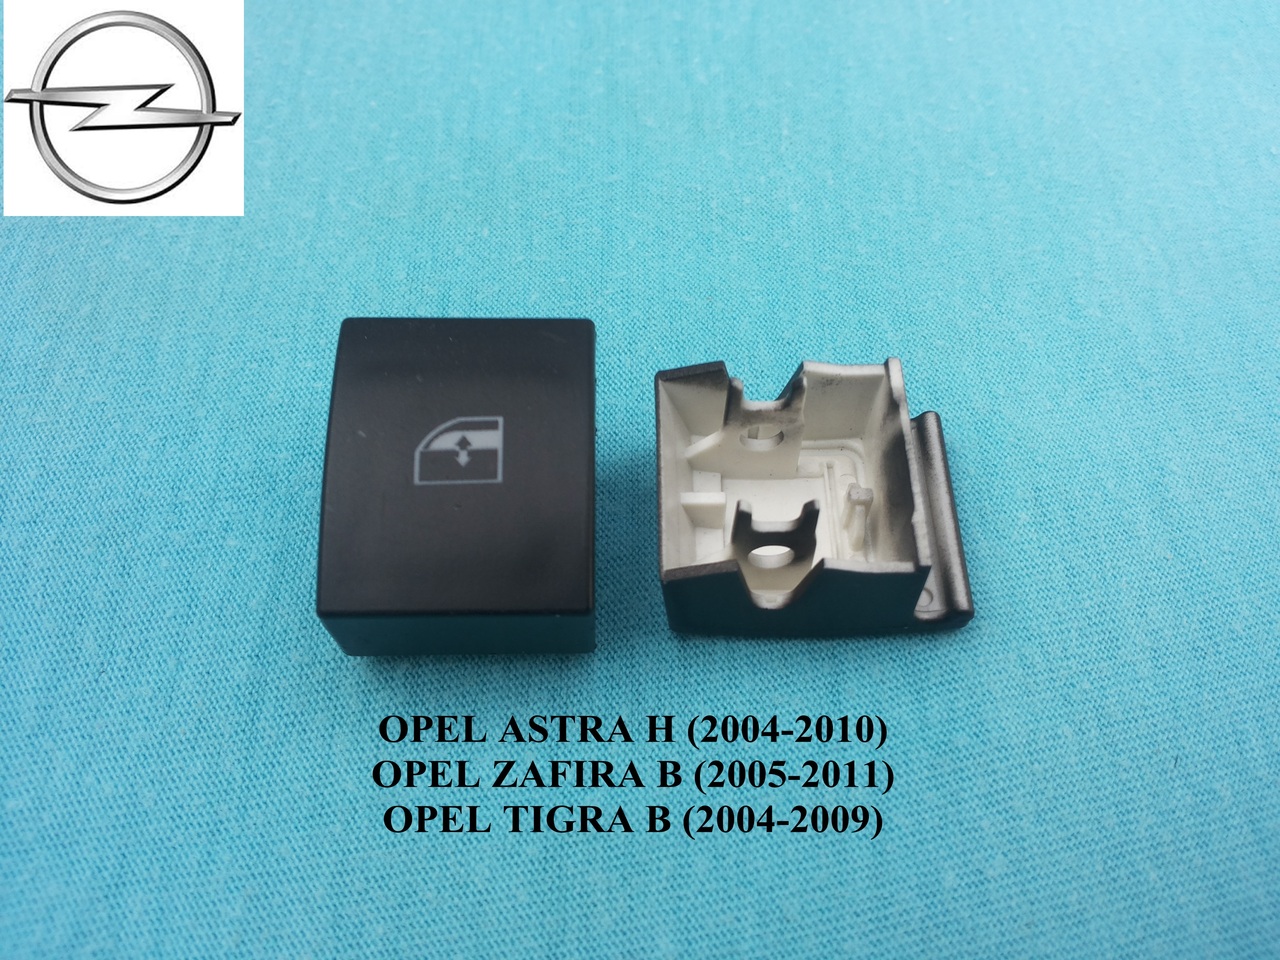 Capac buton geam electric Opel Astra H Zafira B Tigra B #1100185